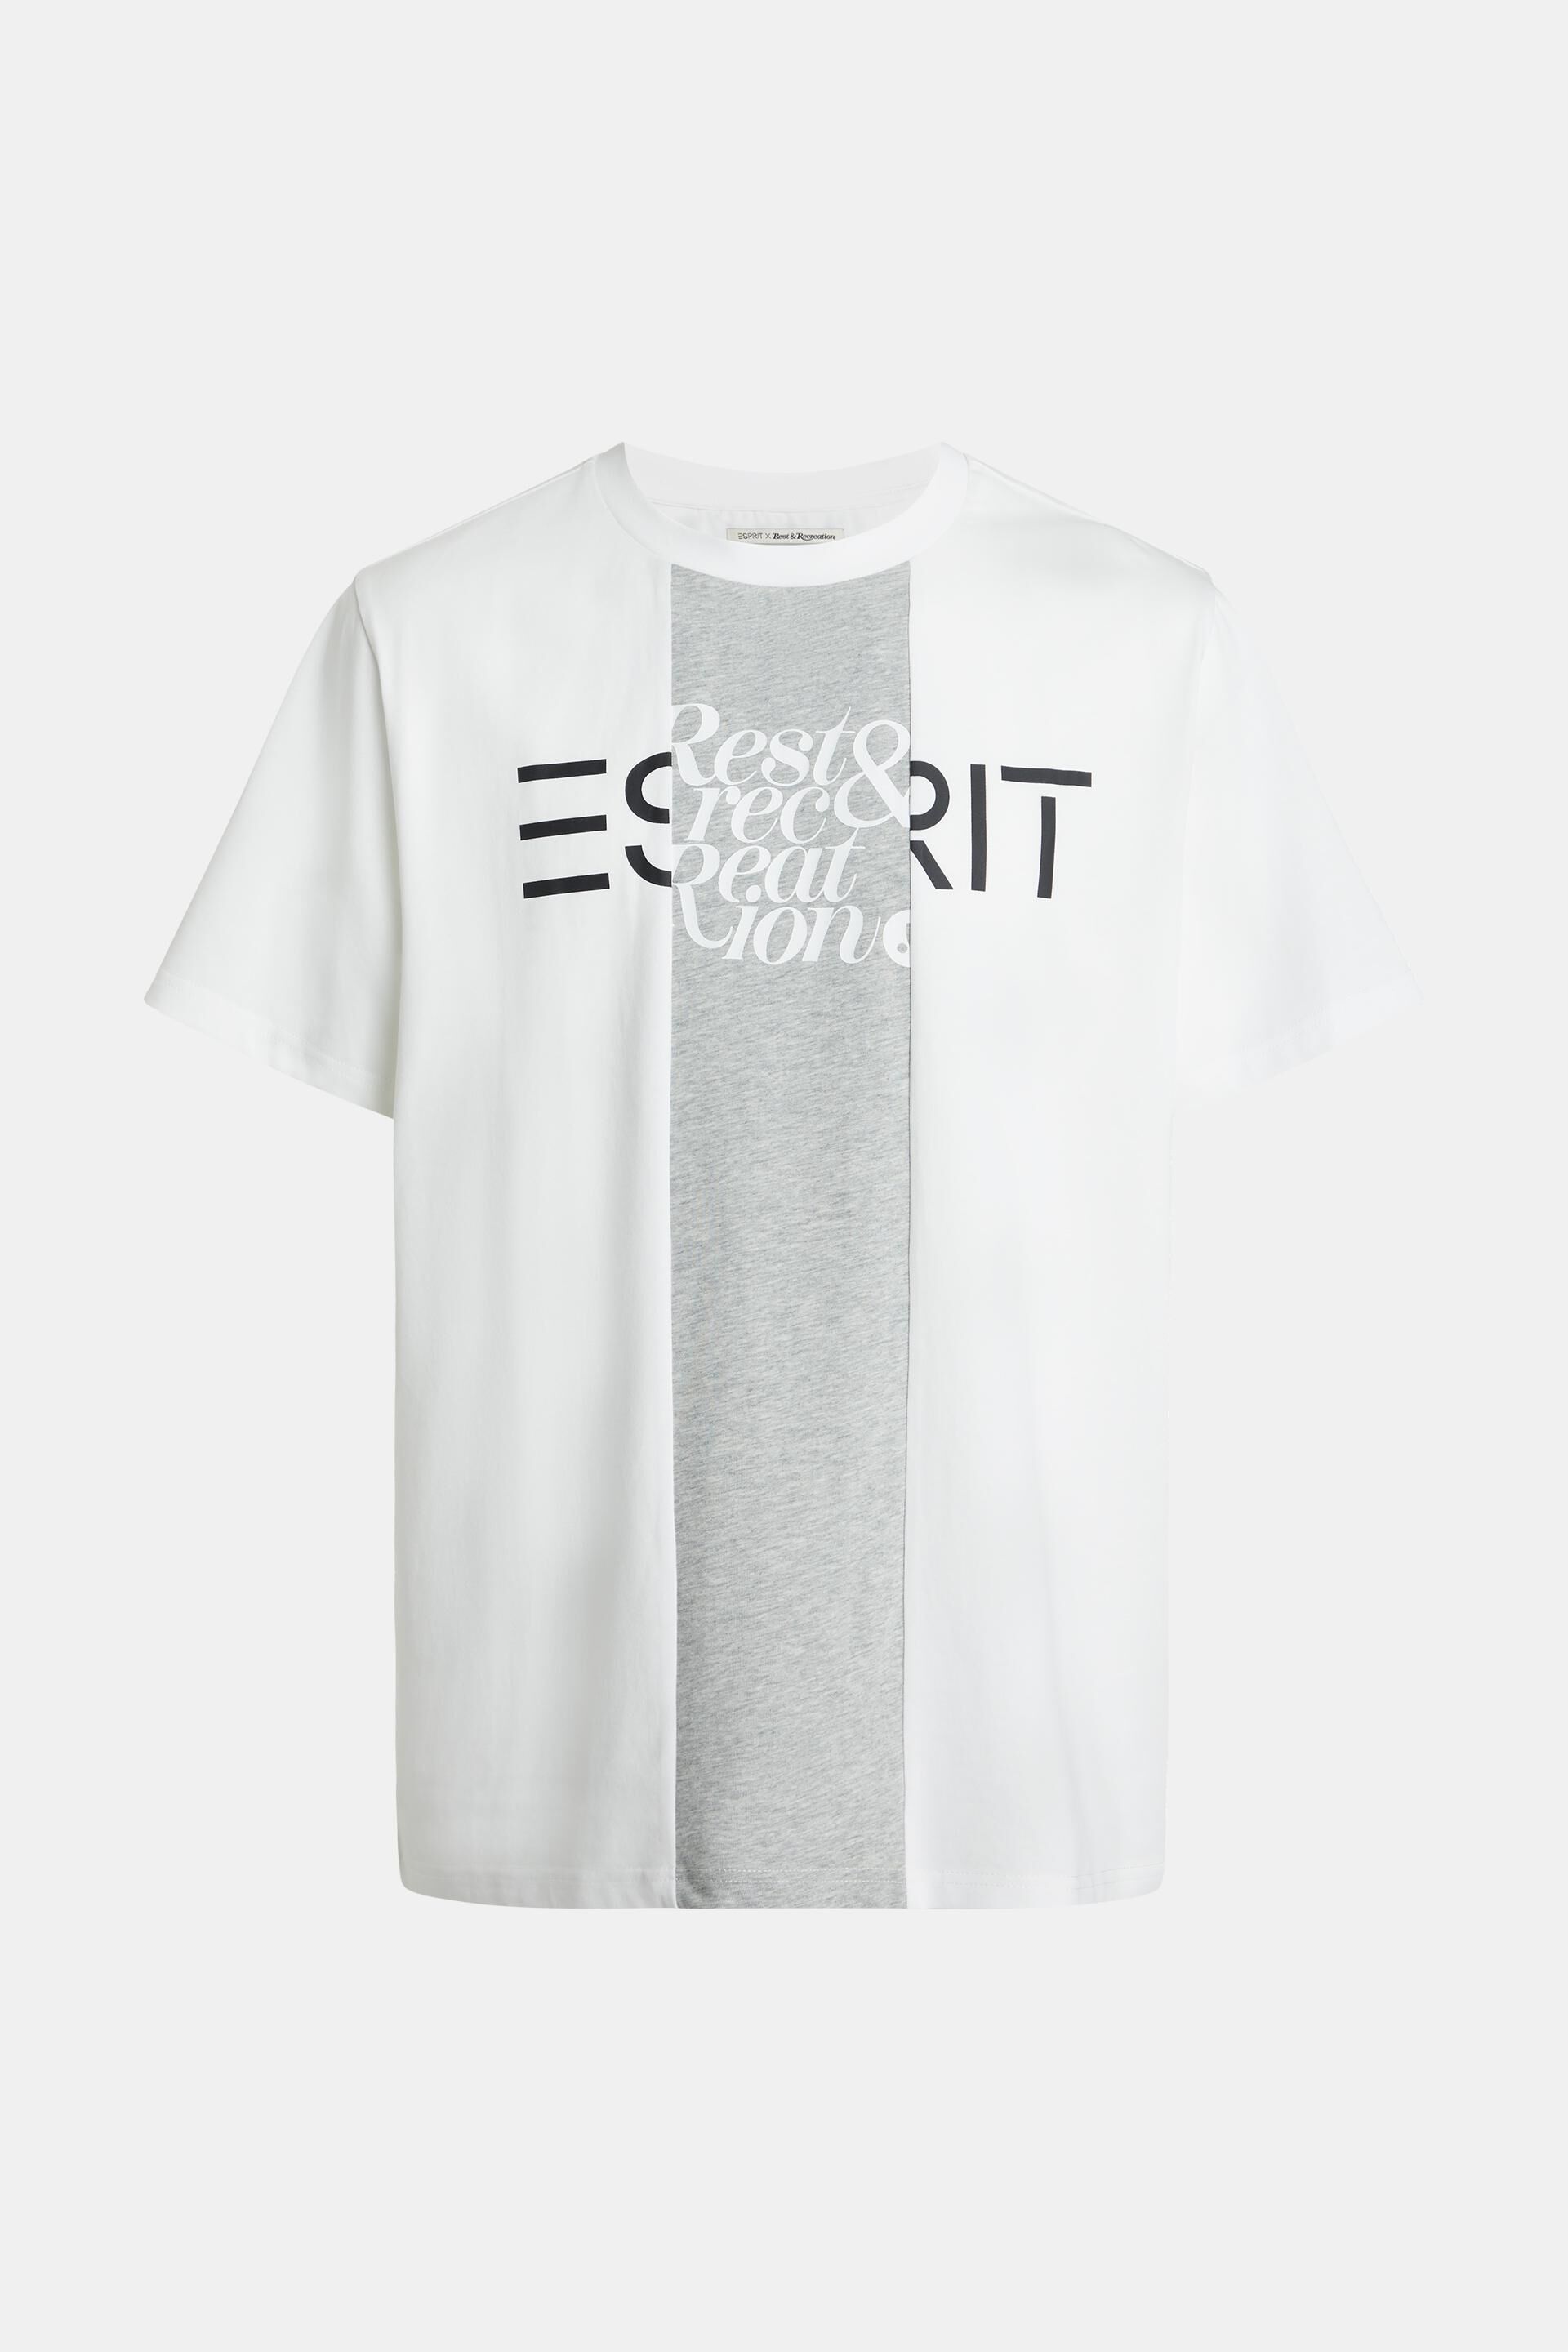 Esprit mit T-Shirt Flicken